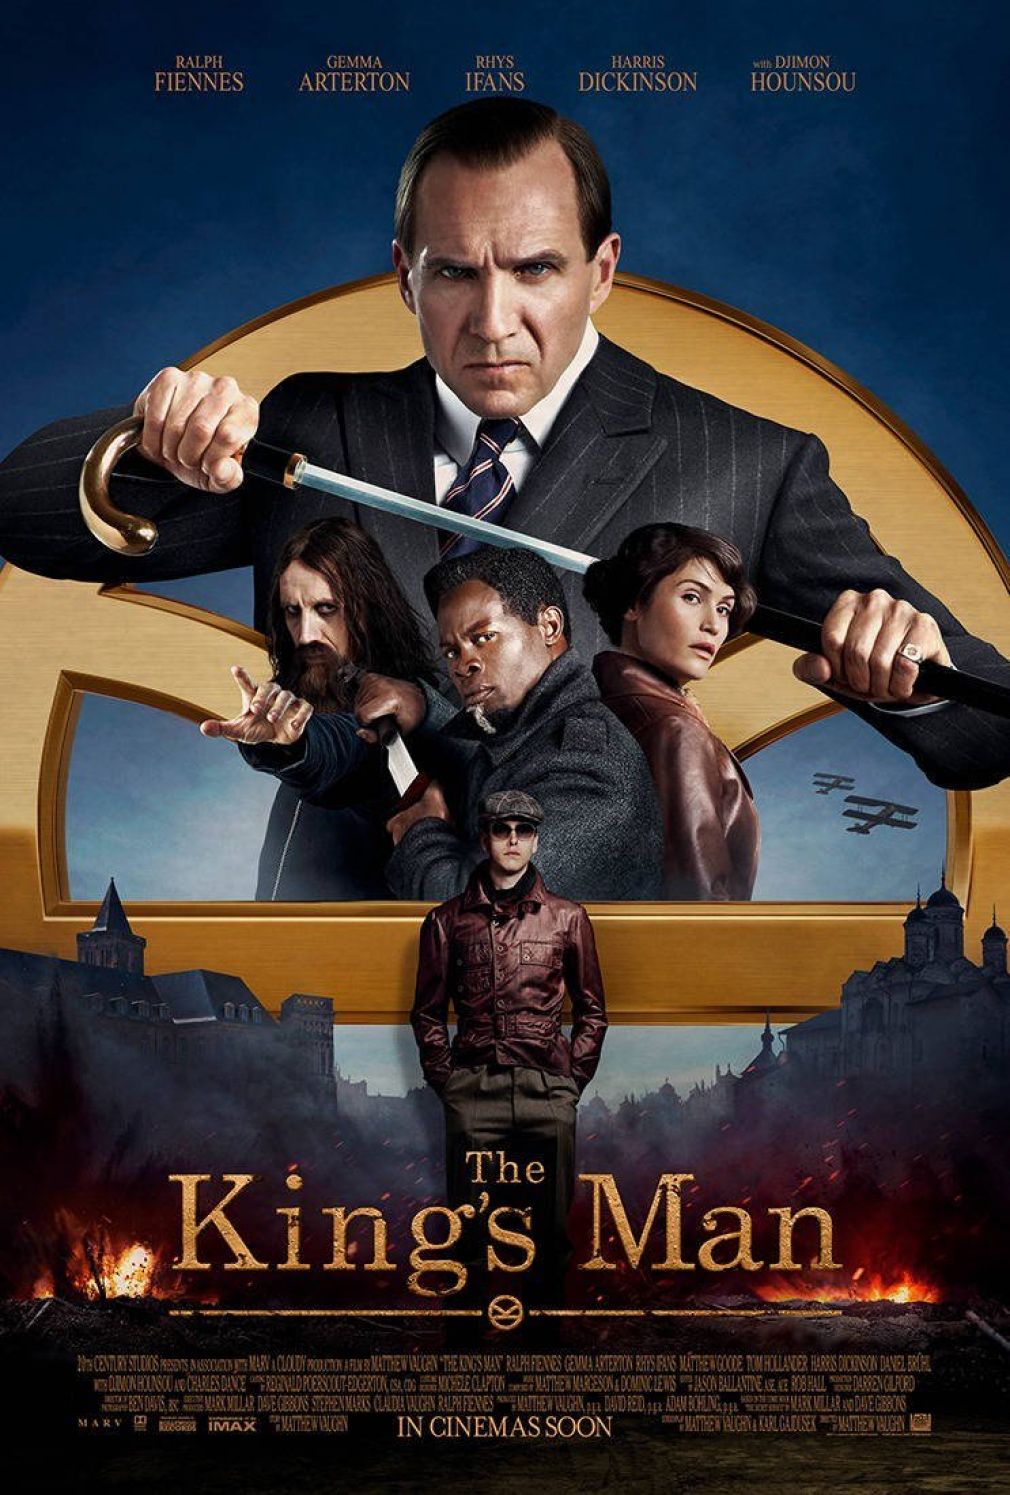 Megérkezett a Kingsman sorozat előzményfilmjének előzetese, ami igencsak véres lesz.